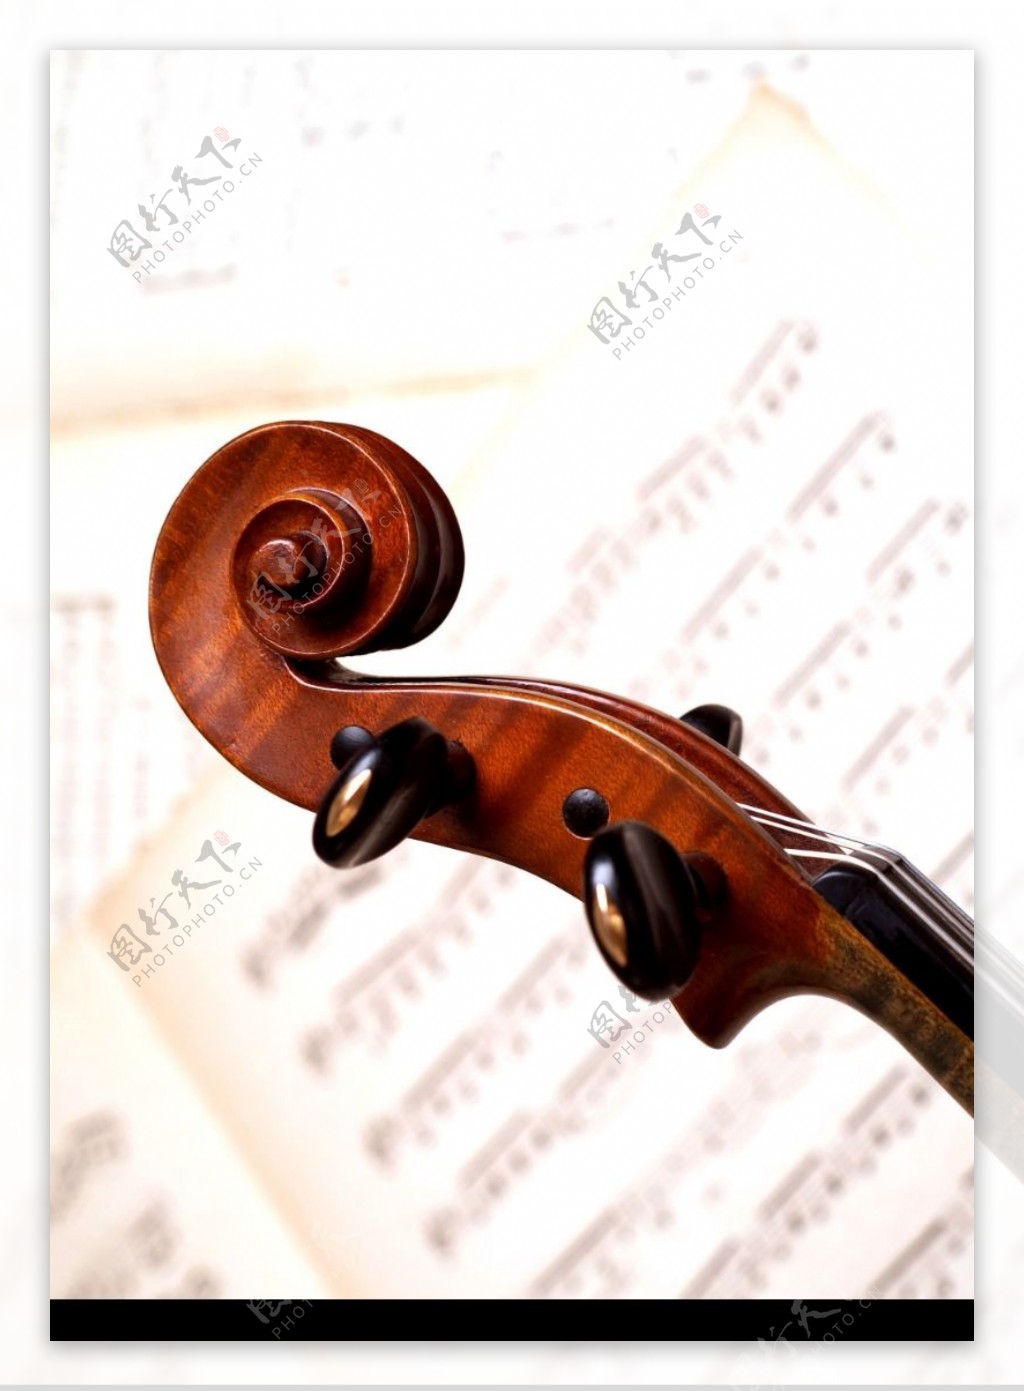 小提琴0029